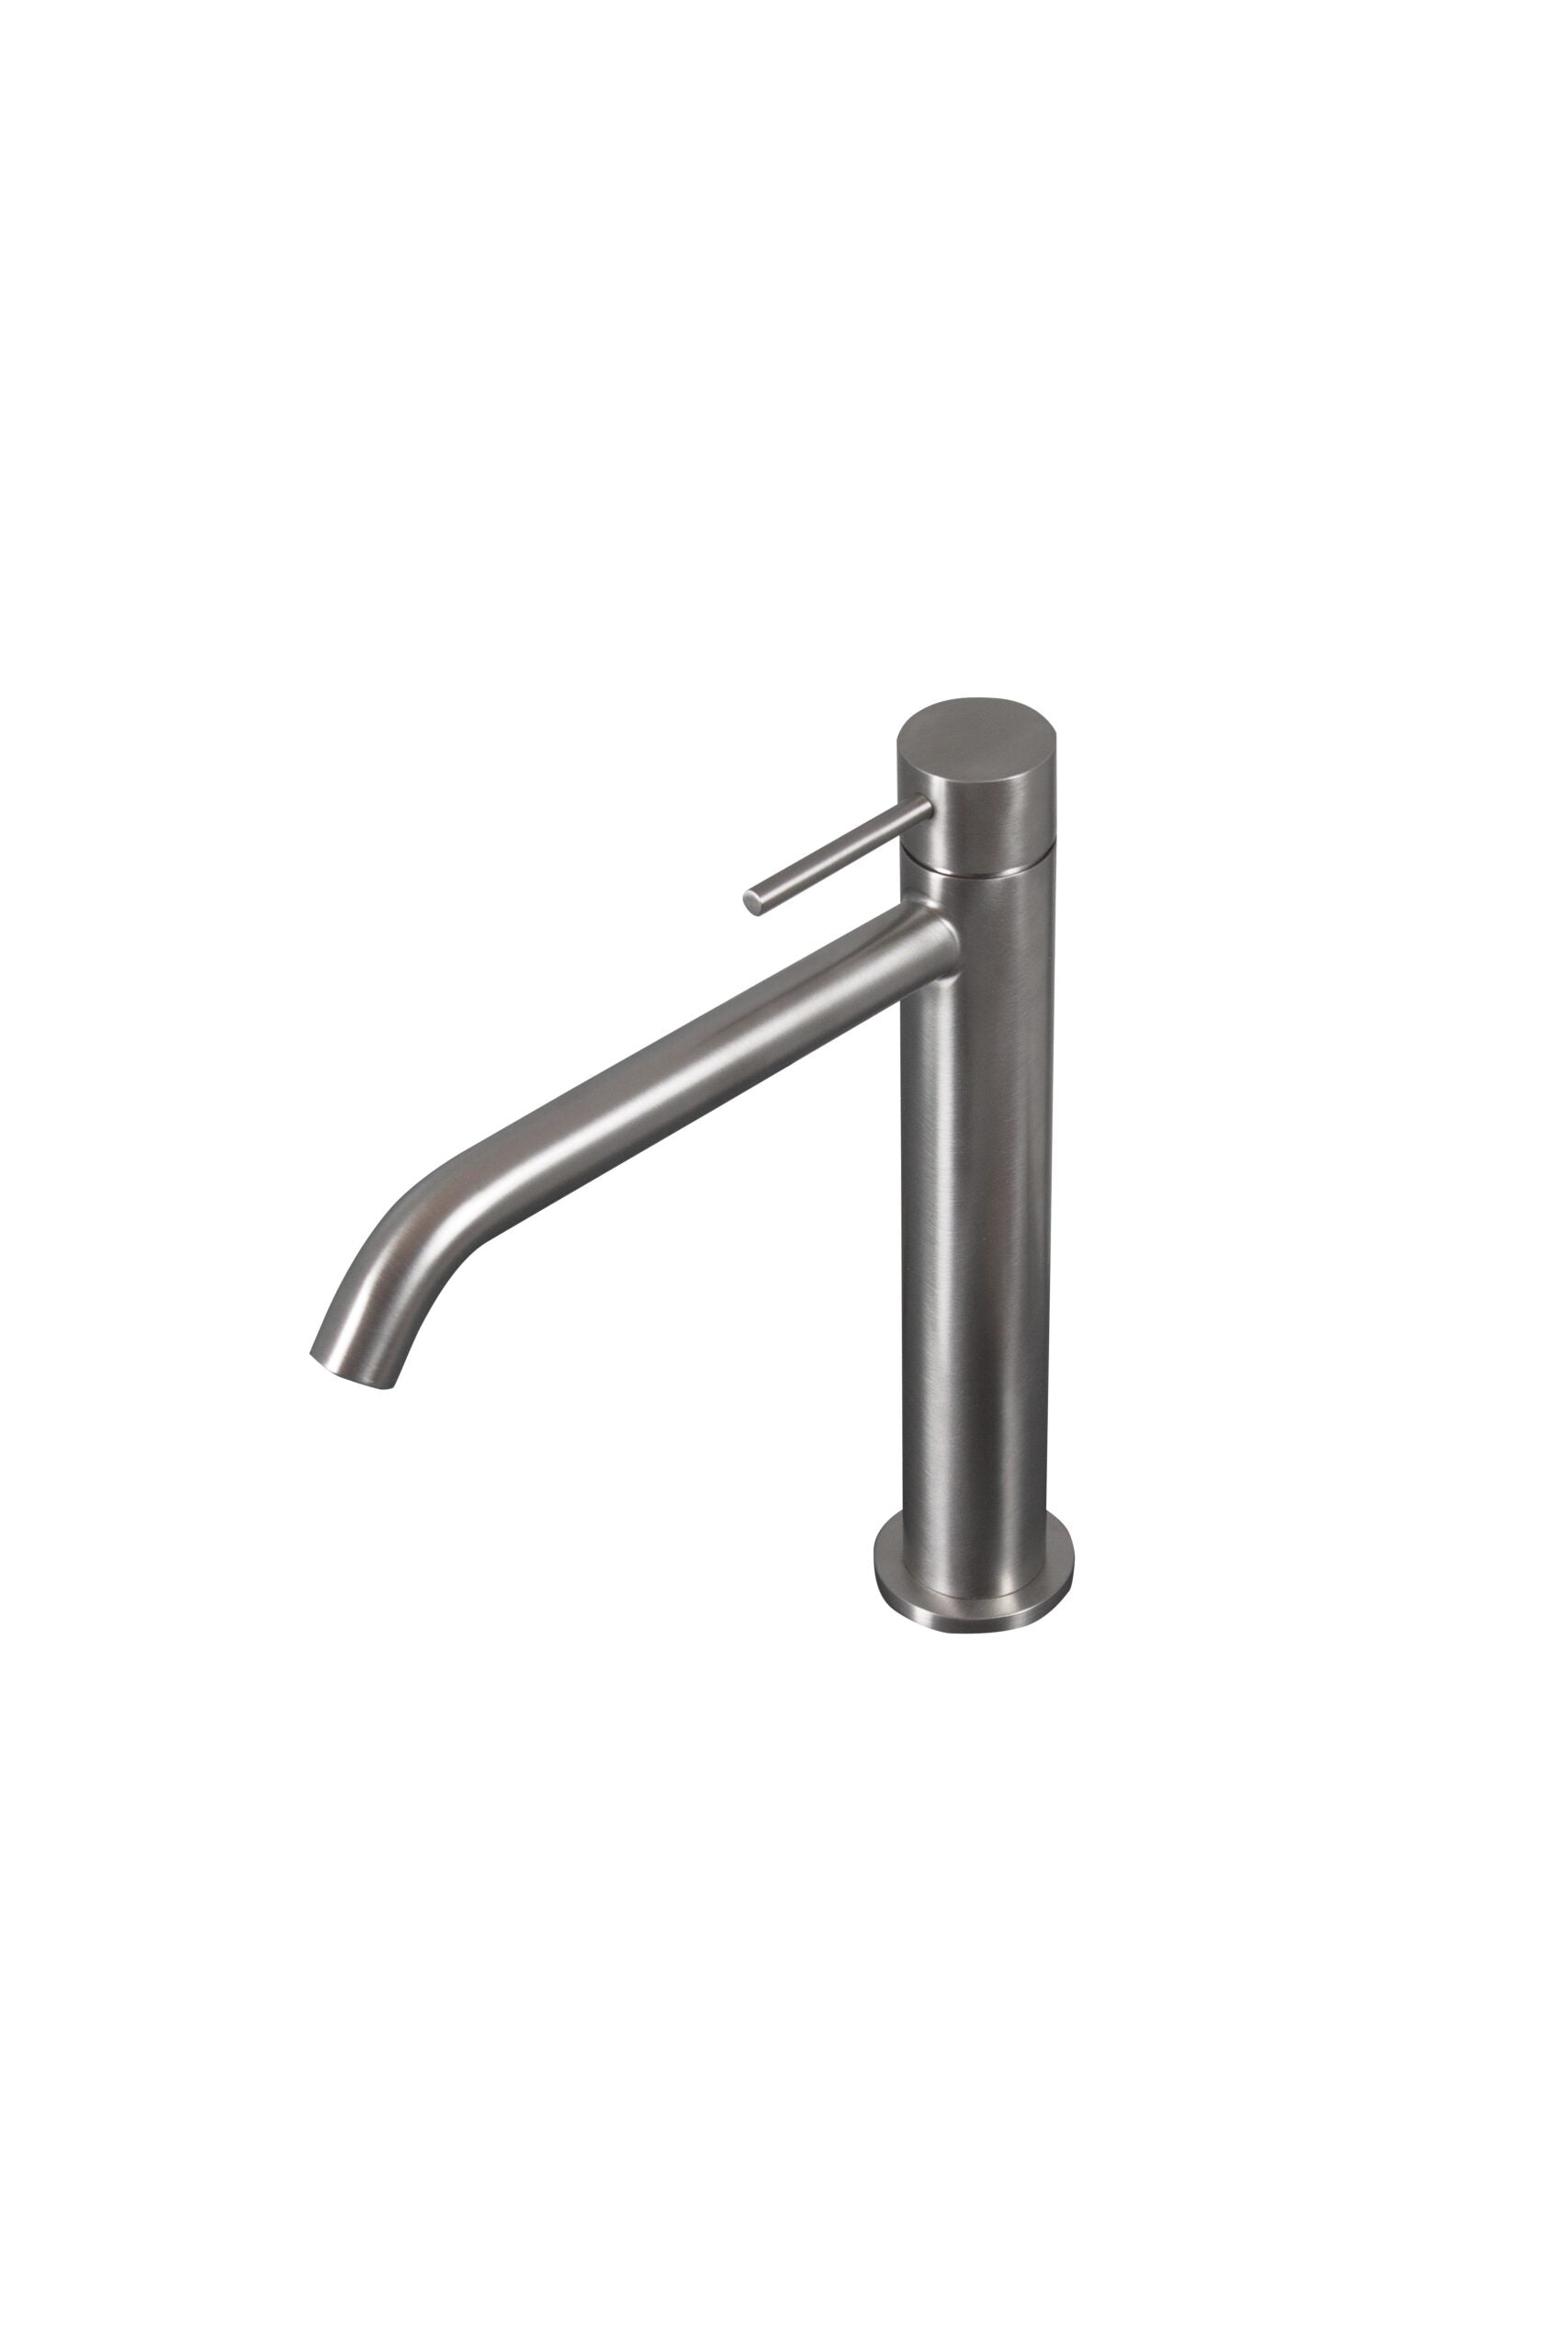 Tubico Tevere rubinetto miscelatore alto per lavabo in acciaio inox 316L rame Made in Italy T44166C